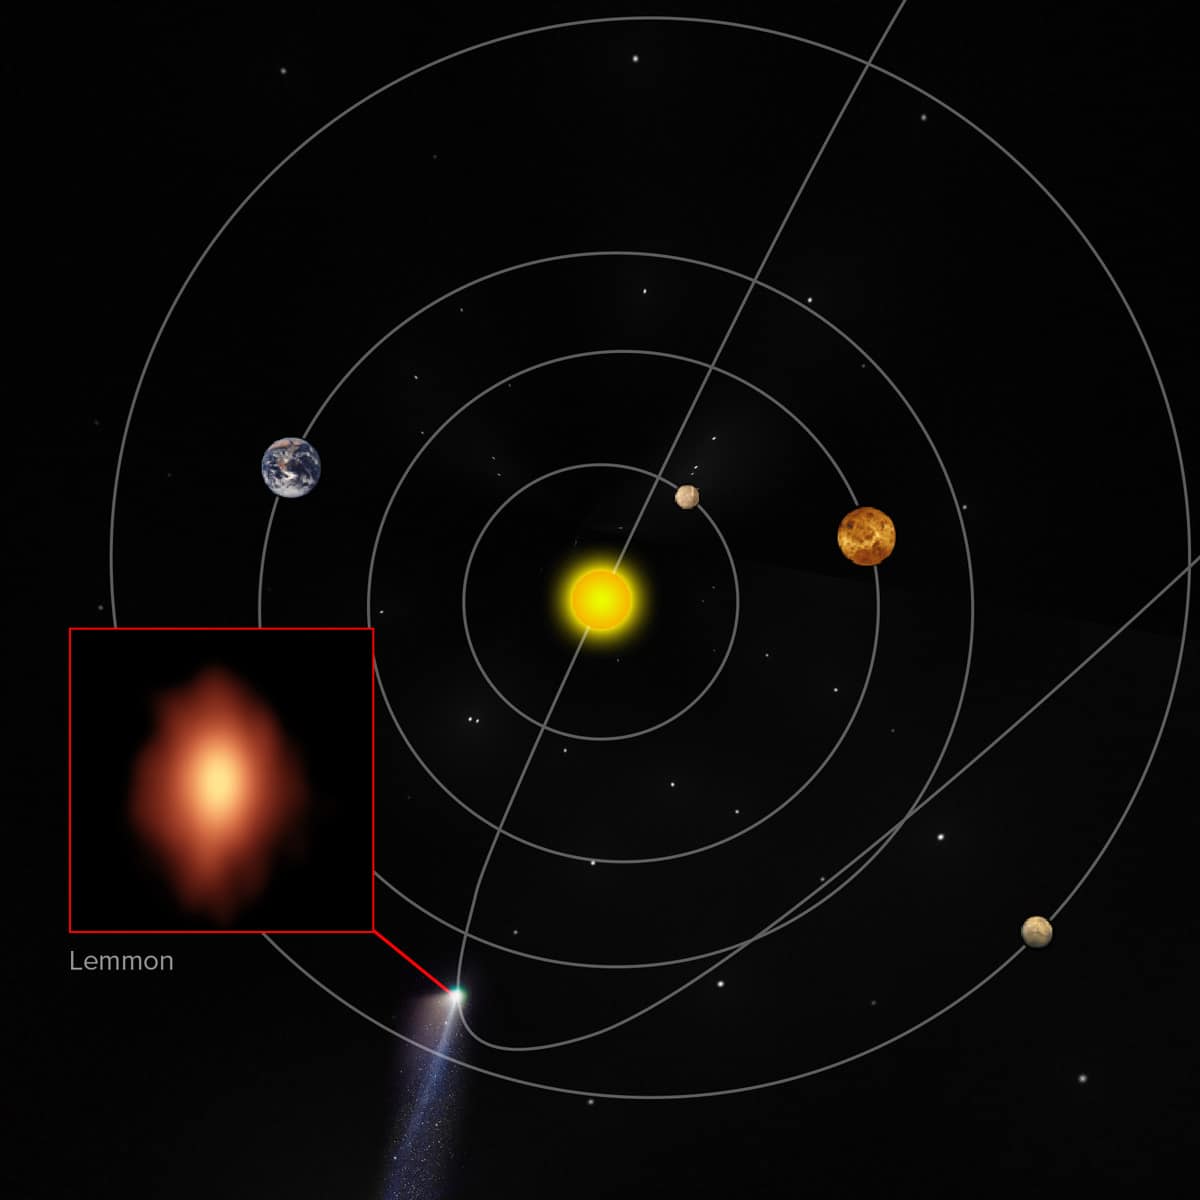 Localização aproximada do cometa Lemmon no nosso Sistema Solar no momento das observações do ALMA. Crédito: B. Saxton (NRAO / AUI / NSF); Gerald Rhemann; M. Cordiner, NASA, et al.